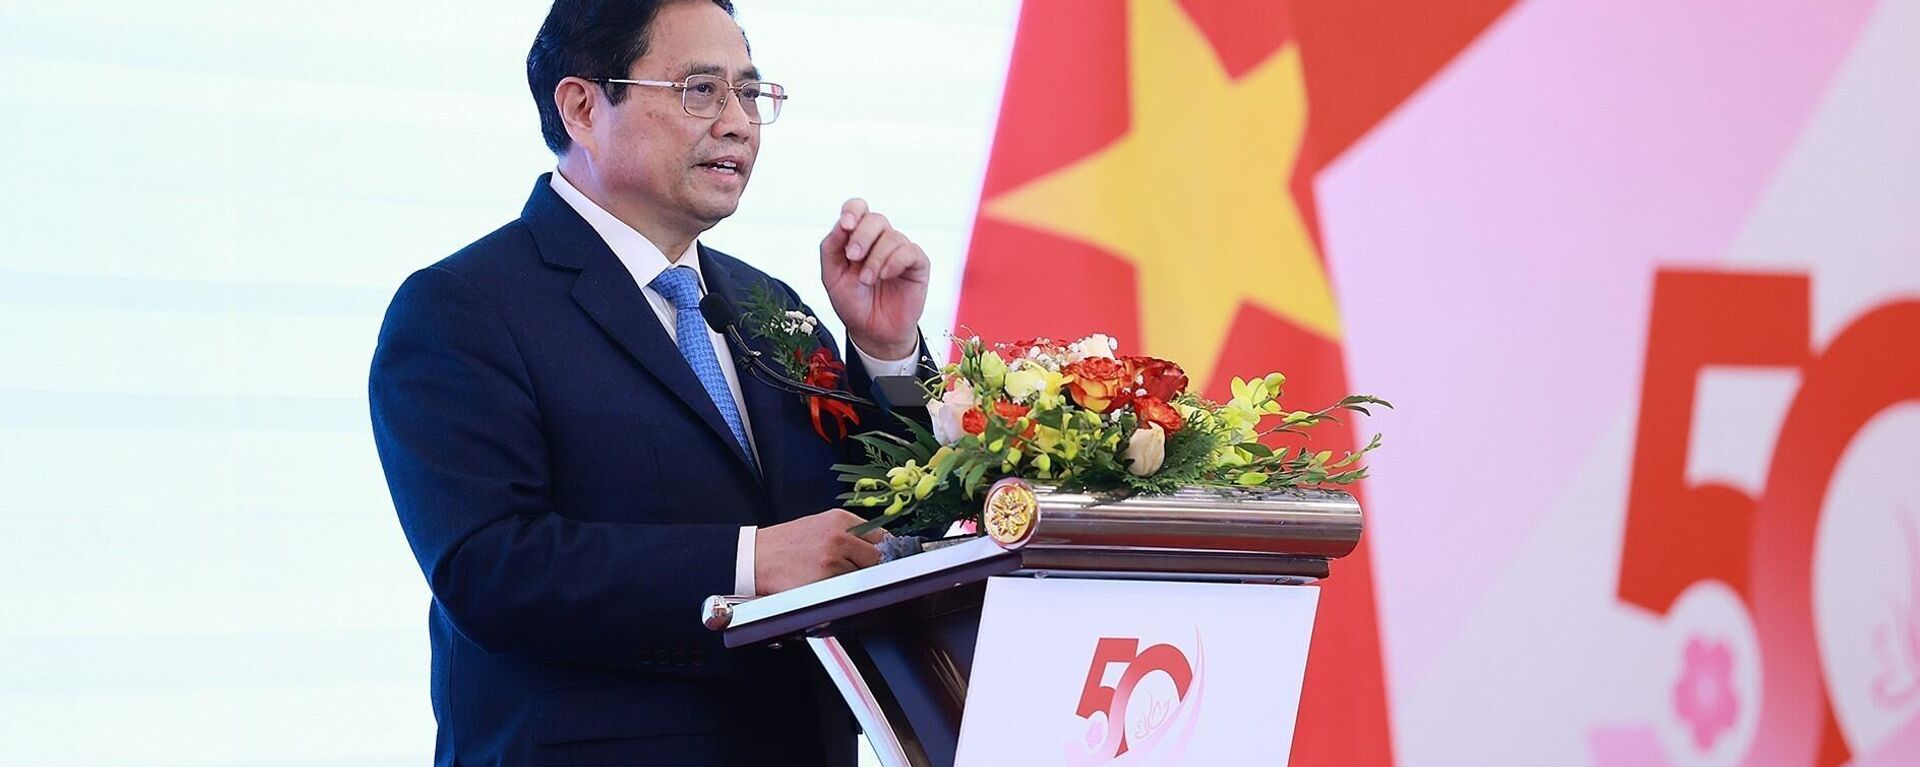 Thủ tướng gợi mở hướng hợp tác của Việt Nam - Nhật Bản là phát triển xanh, bền vững và thúc đẩy công nghệ, đổi mới sáng tạo - Sputnik Việt Nam, 1920, 07.03.2023